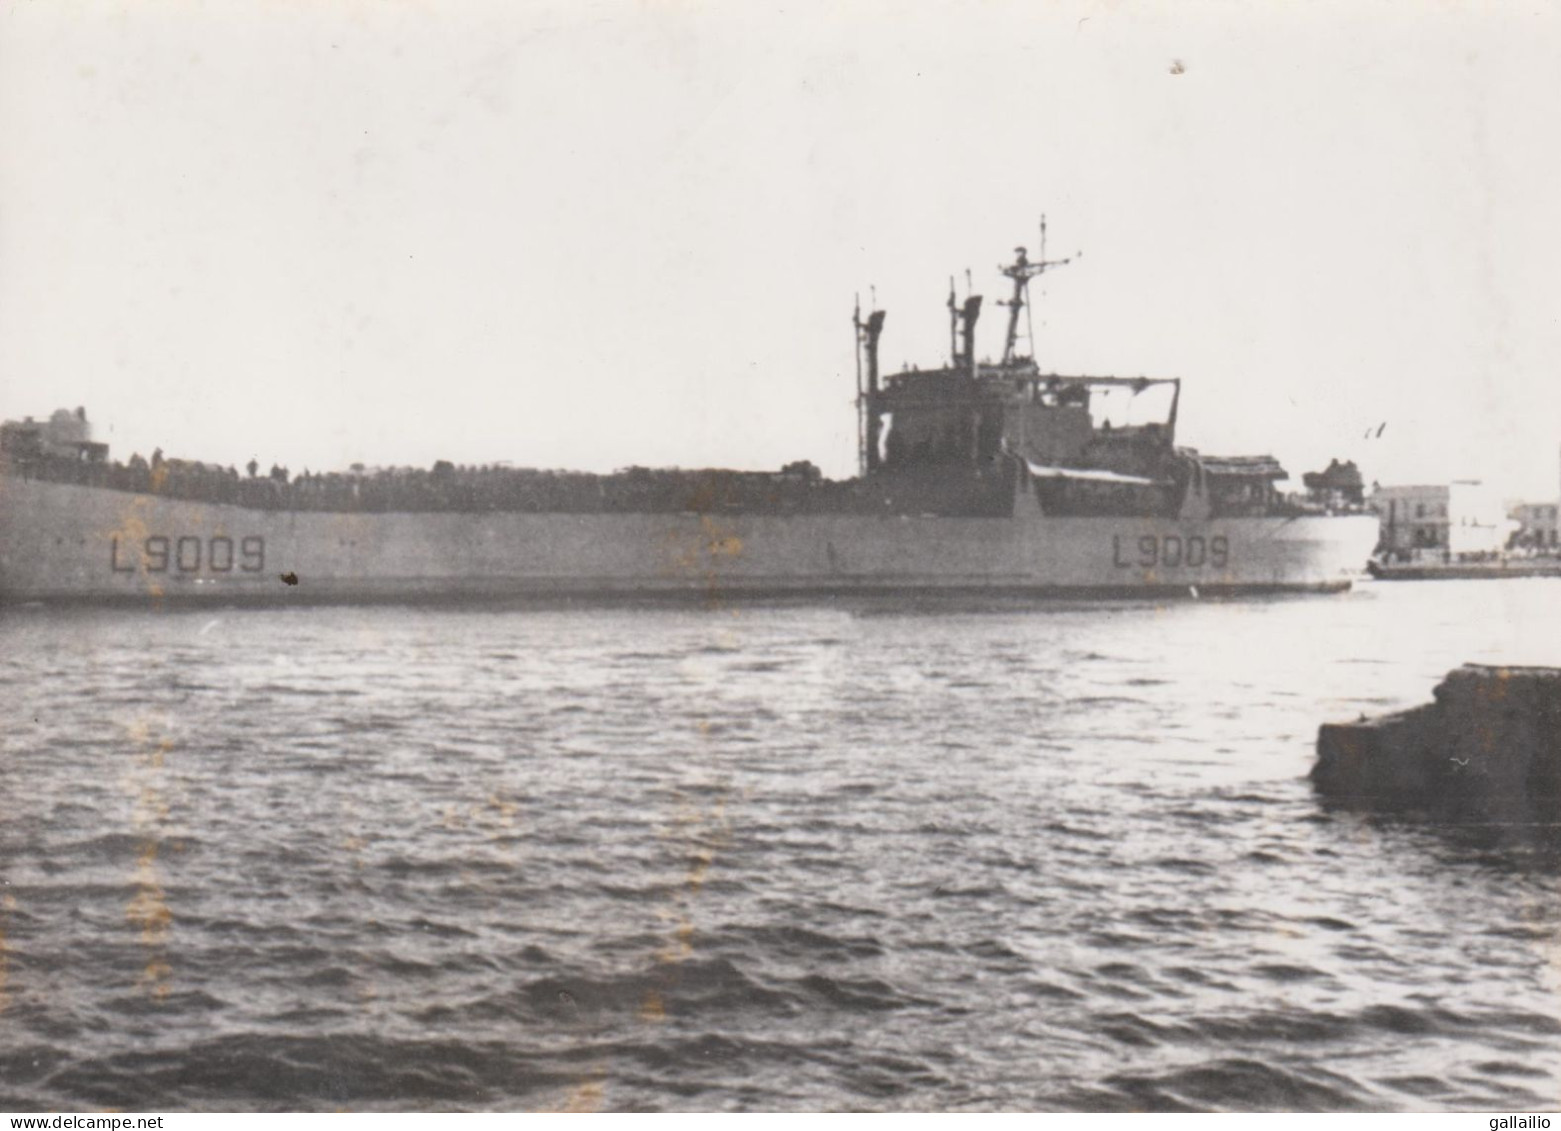 PHOTO PRESSE UN NAVIRE DE GUERRE FRANCAIS QUITTE LE PORT DE BIZERTE OCTOBRE 1963 FORMAT 13 X 18 CMS - Schiffe